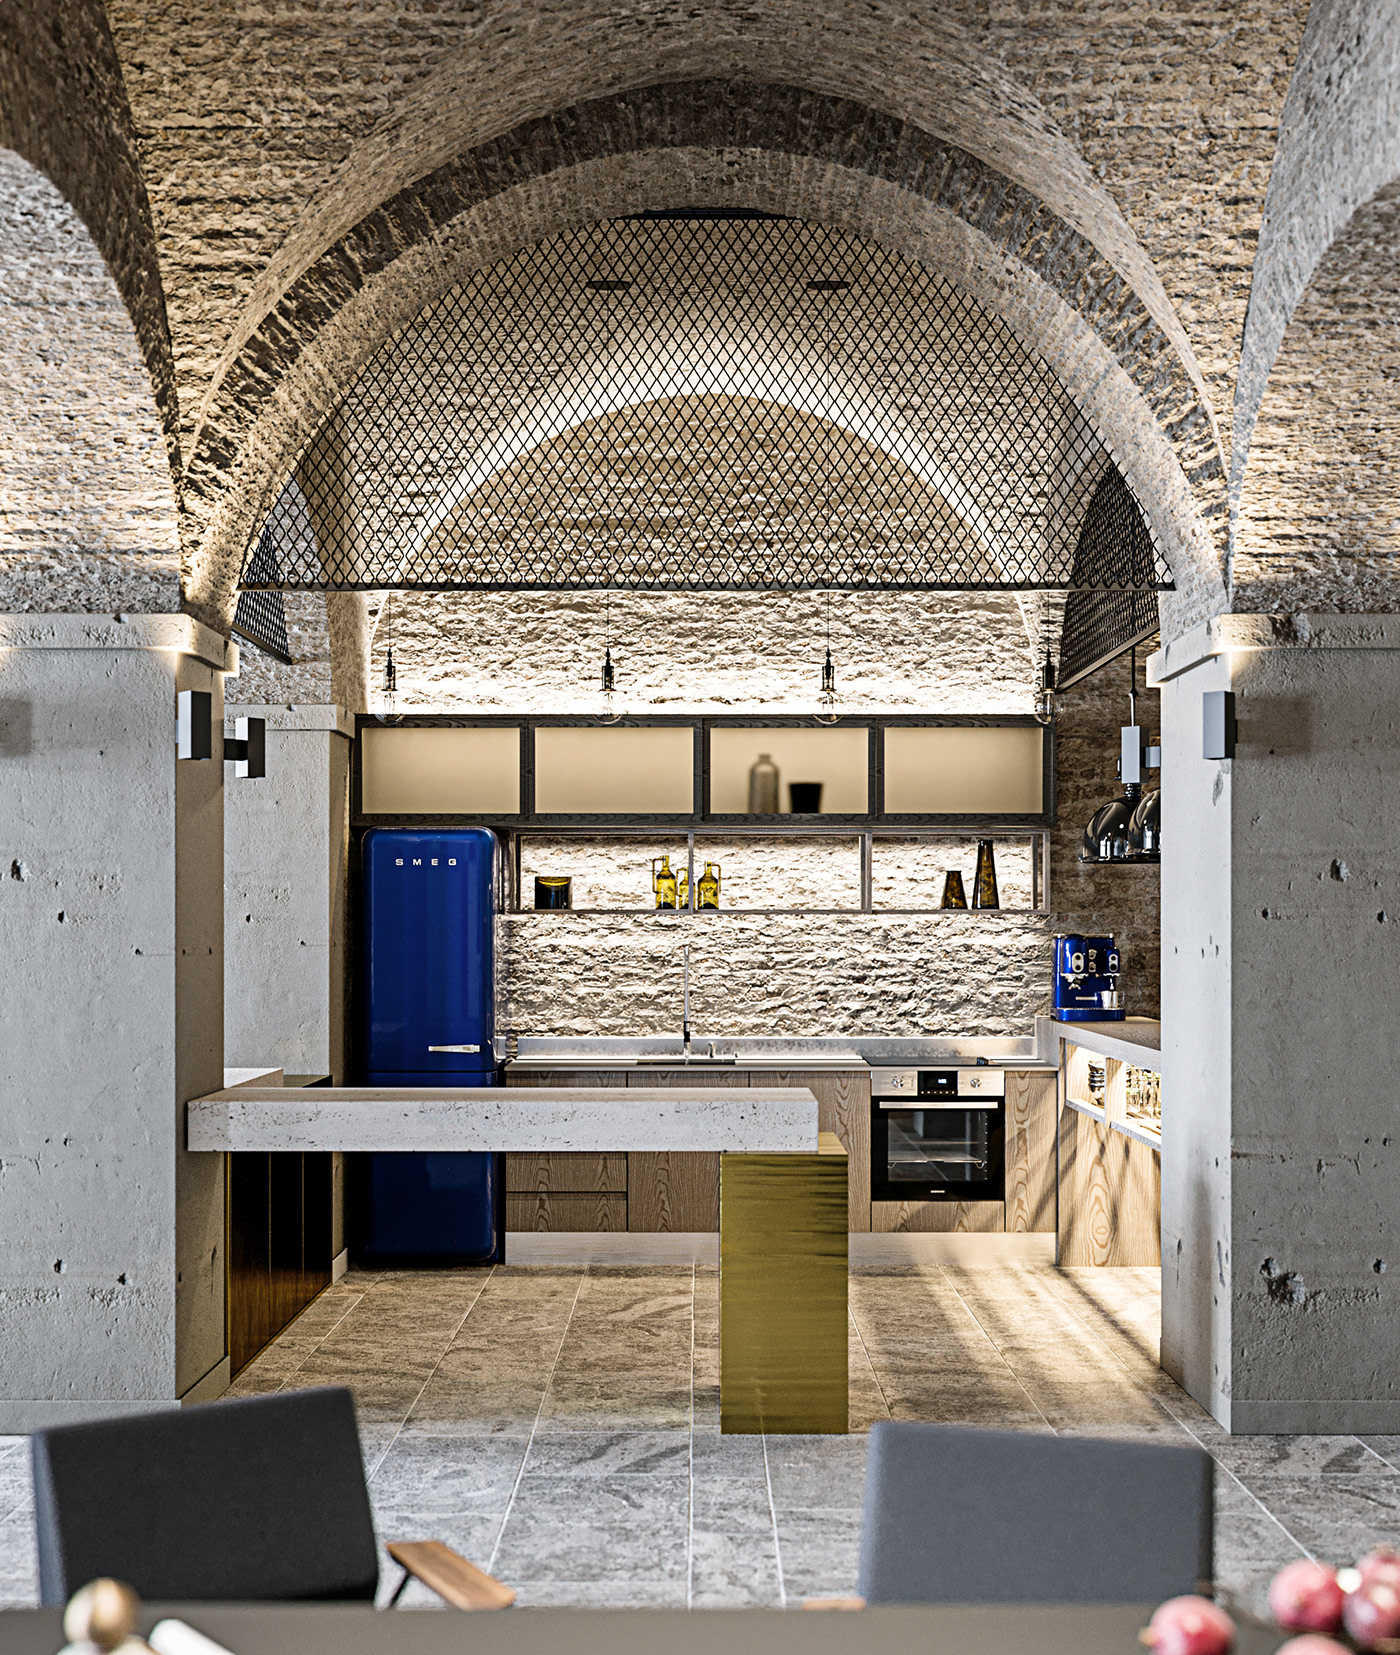 Office Macbook Arches Workplace Lisbon Archviz 3DImage 3DDesign 3DArt Portugal Loft Interior kitchen